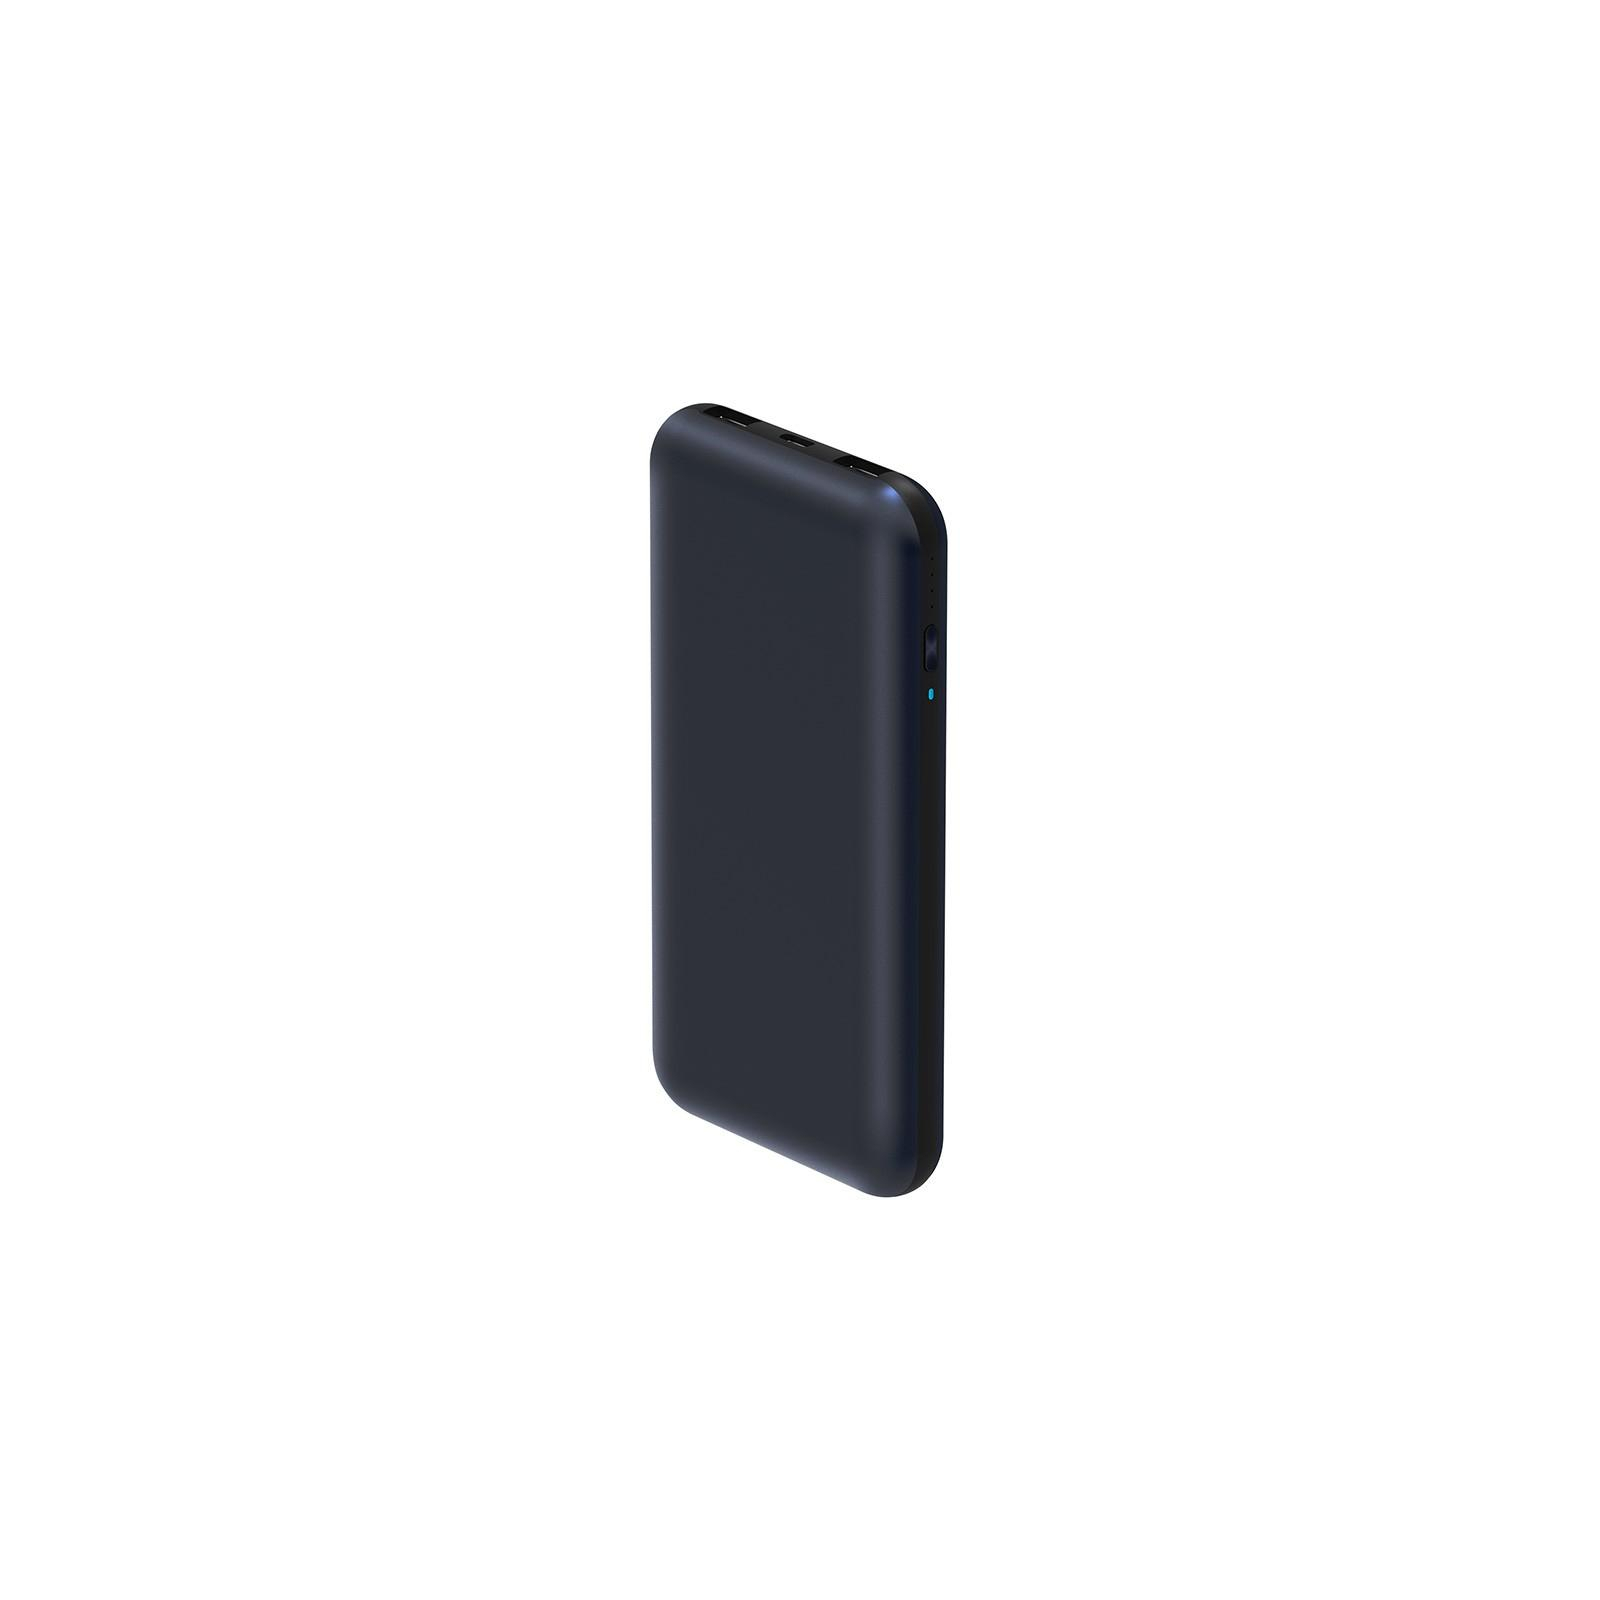 Батарея универсальная ZMI QB820 20000mAh Type-C 2*USB QC2.0/3.0 Black (QB820)